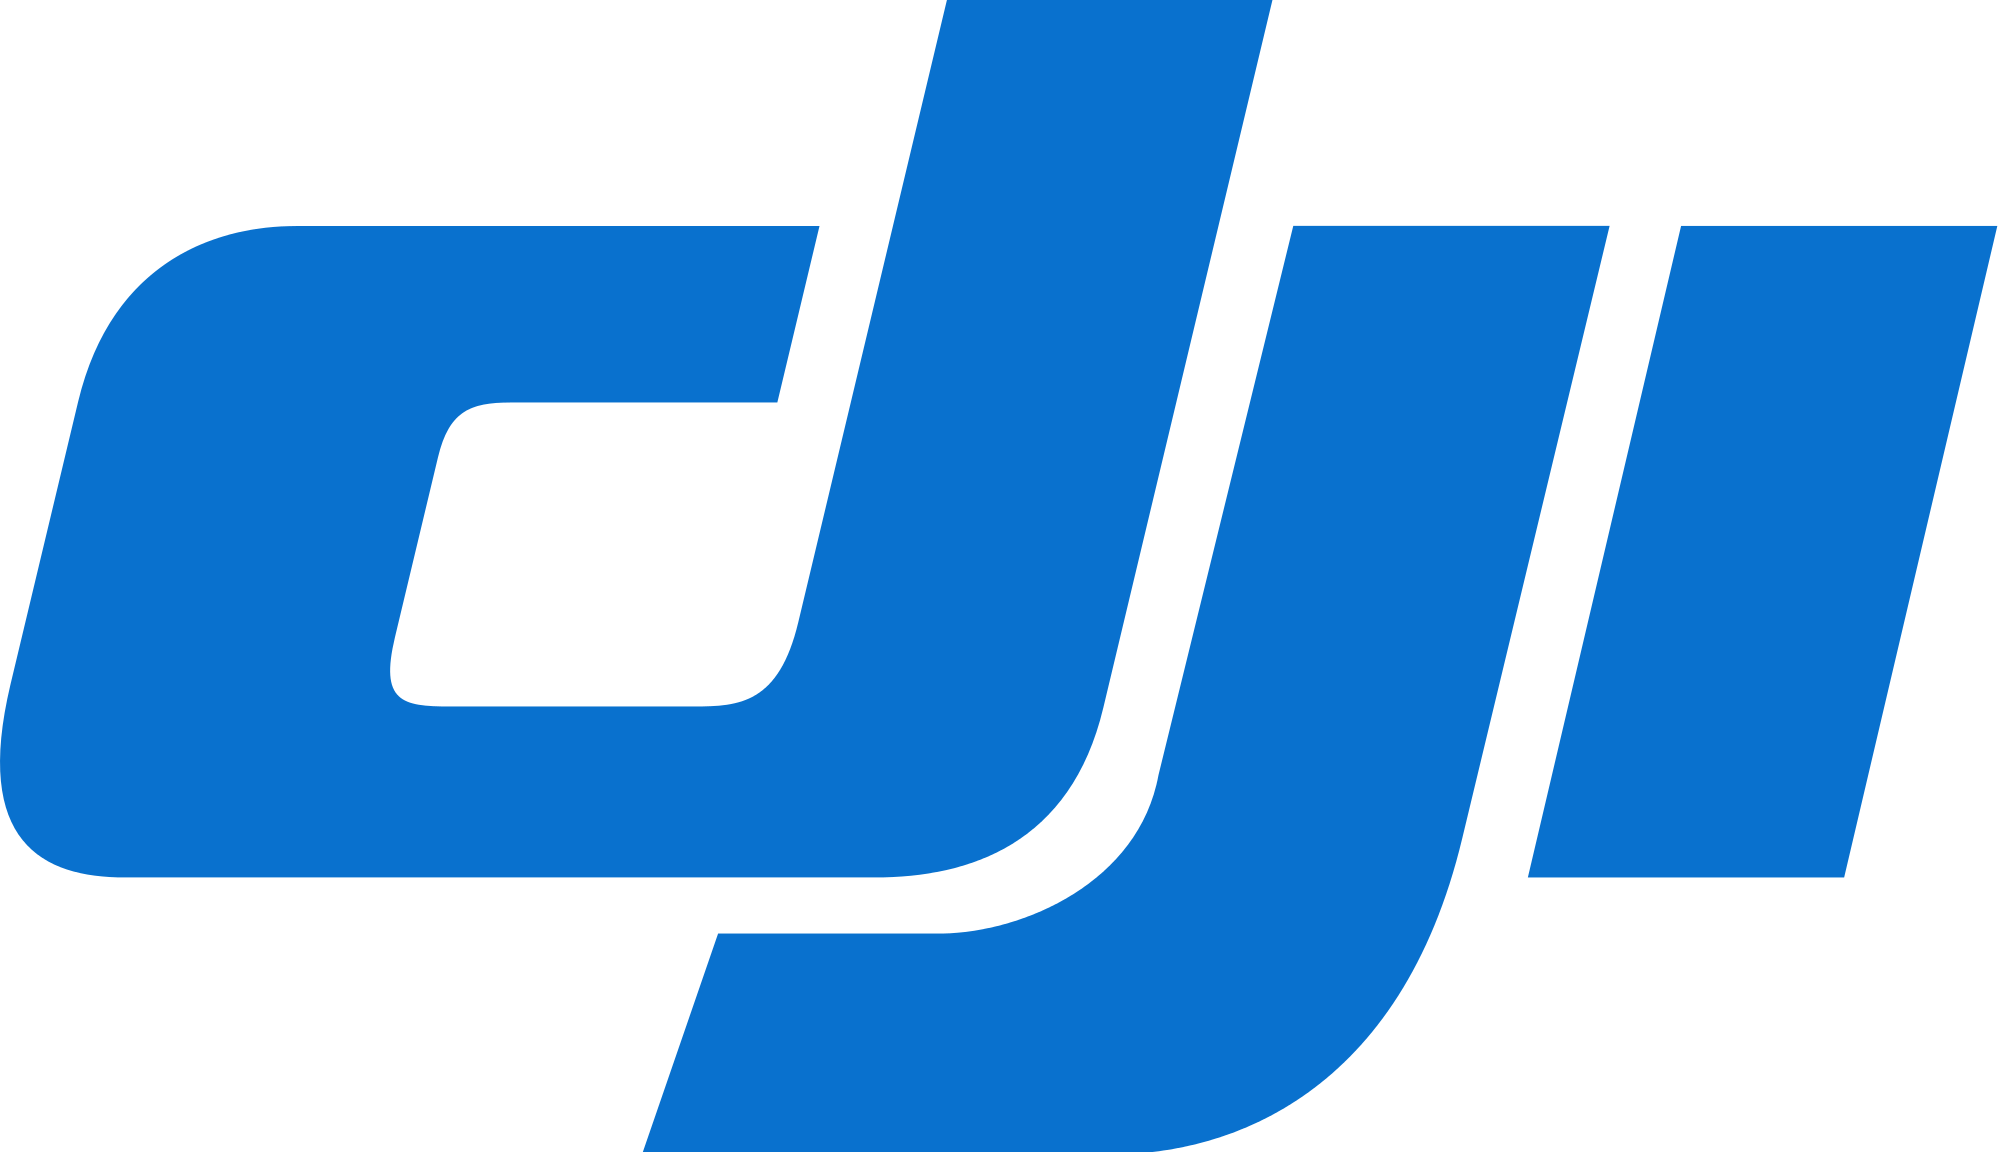 DJI_Innovations_logo.svg.png